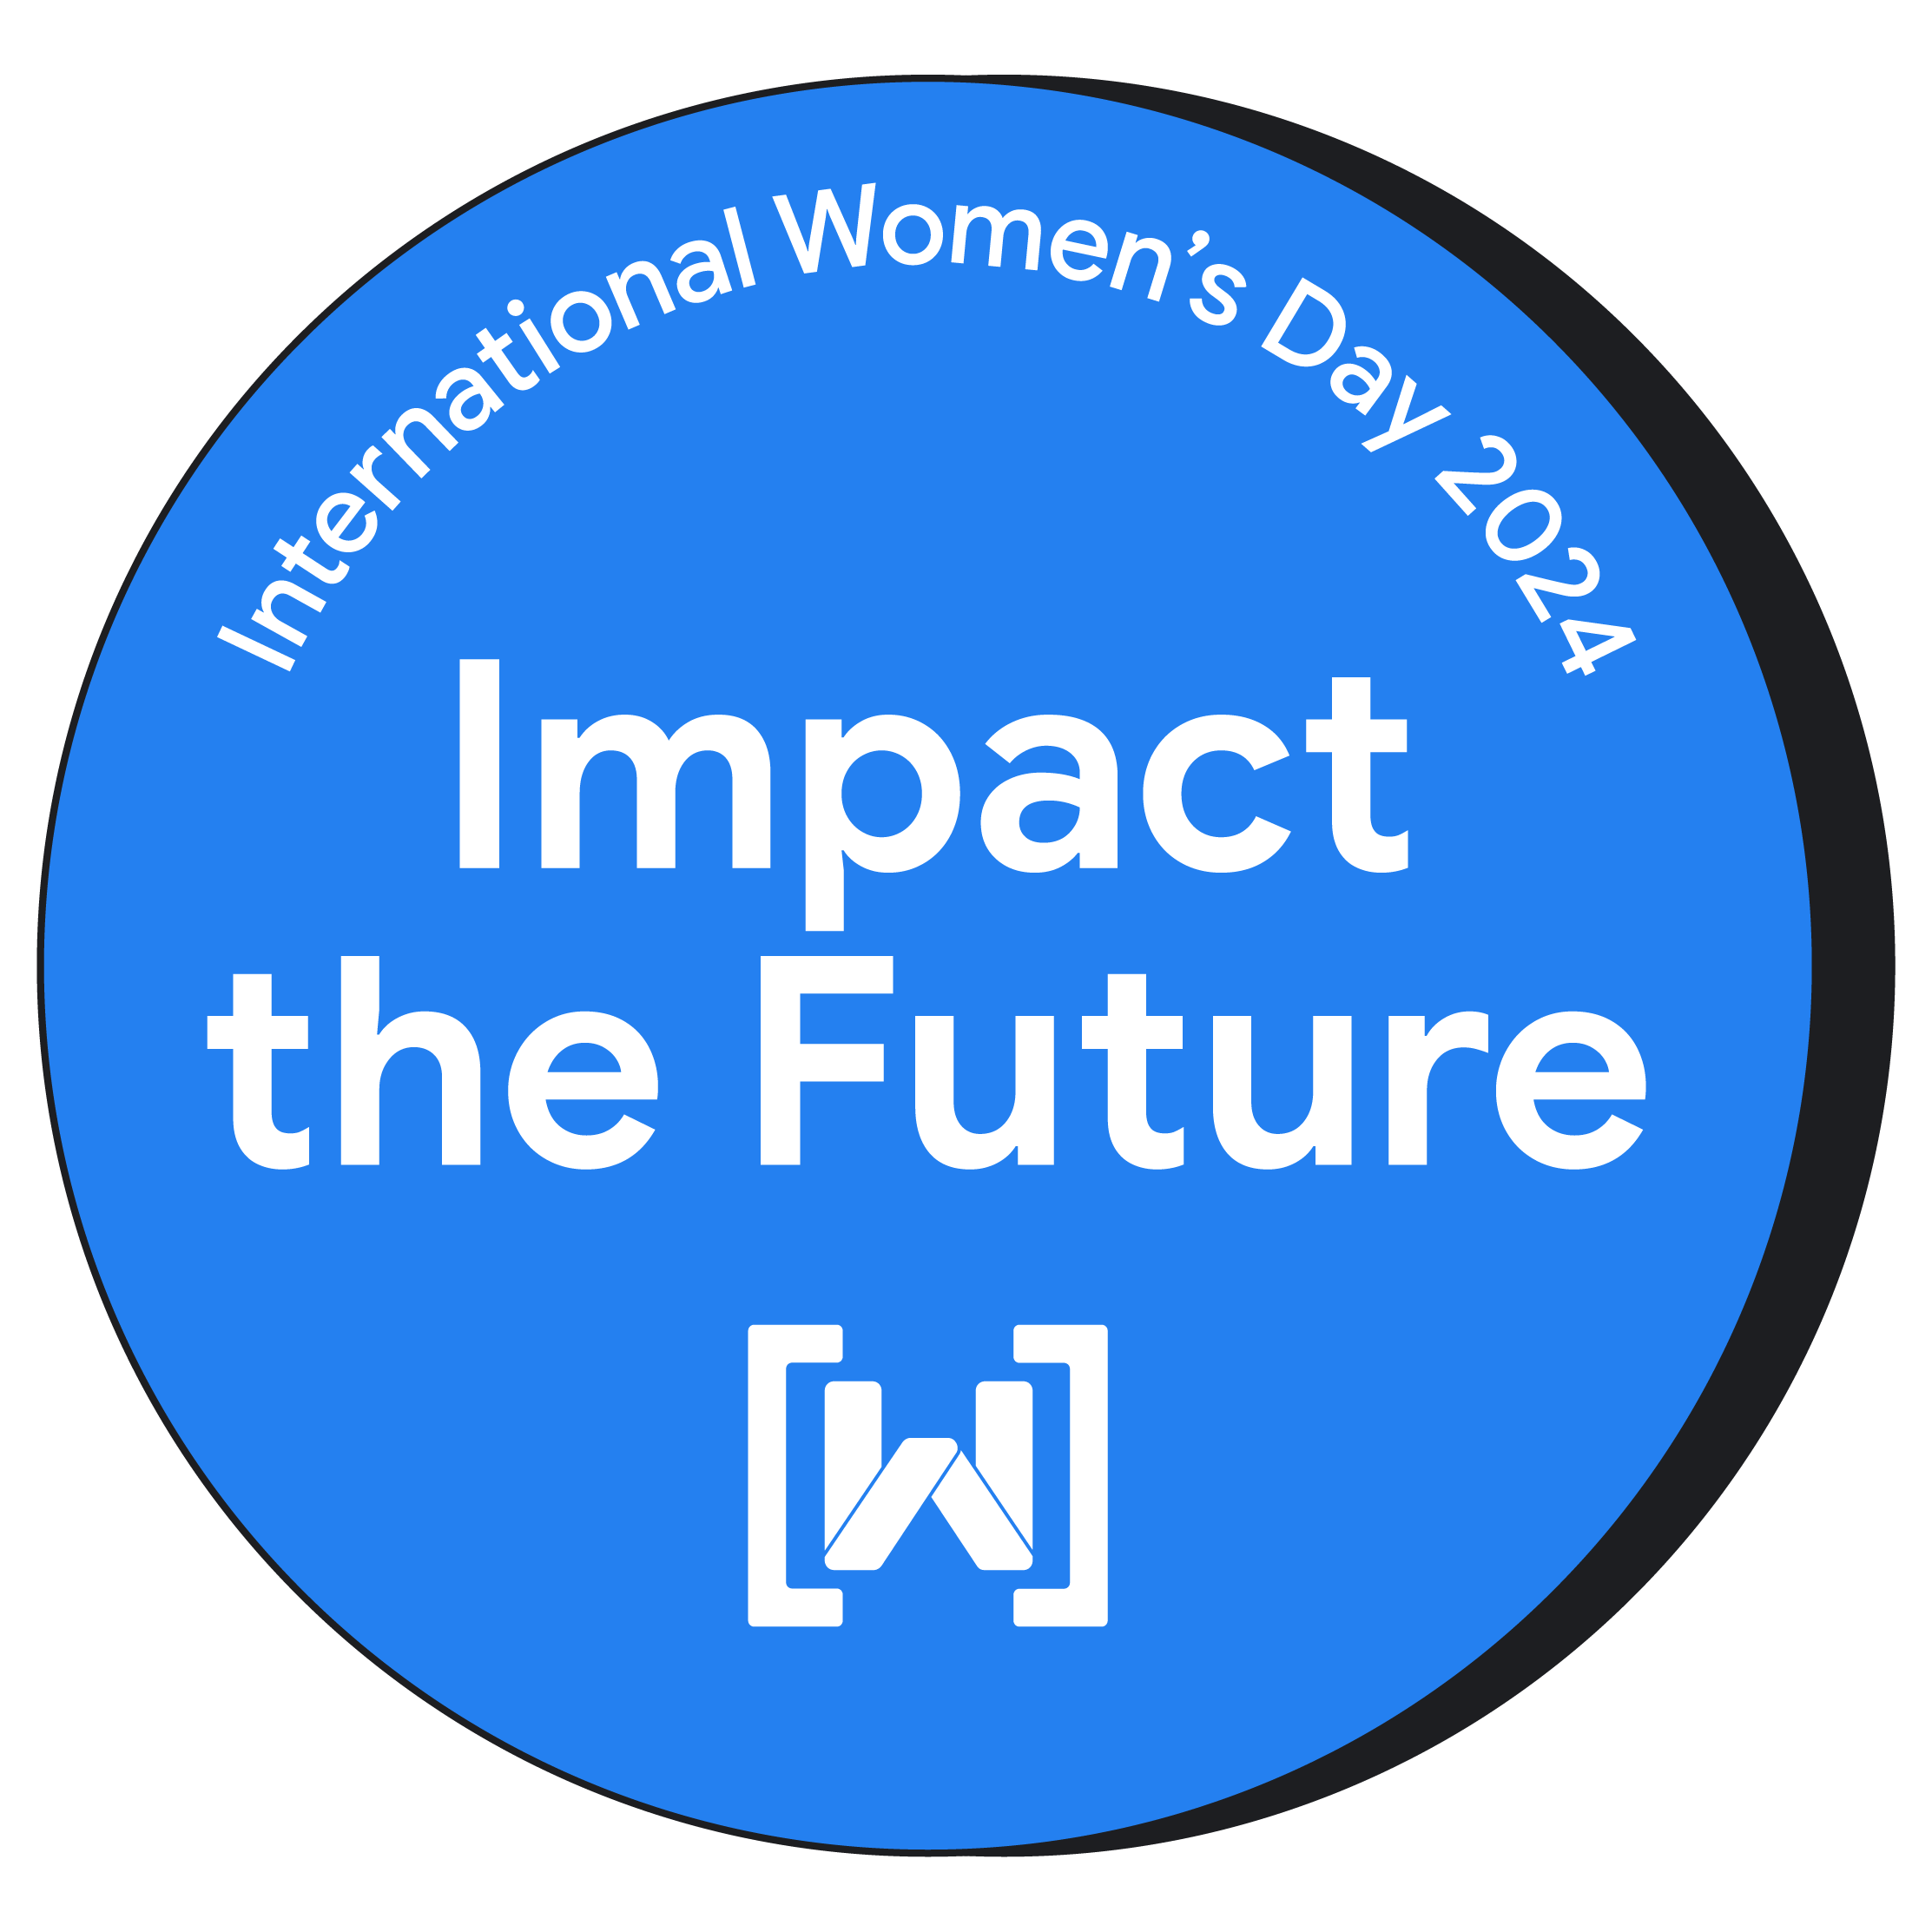 慶祝 2024 年國際婦女節的圓形徽章。該徽章擁有亮藍色的背景，並在中央清楚顯示「Impact the Future」(未來影響)。Women Techmakers 標誌位於徽章底部。